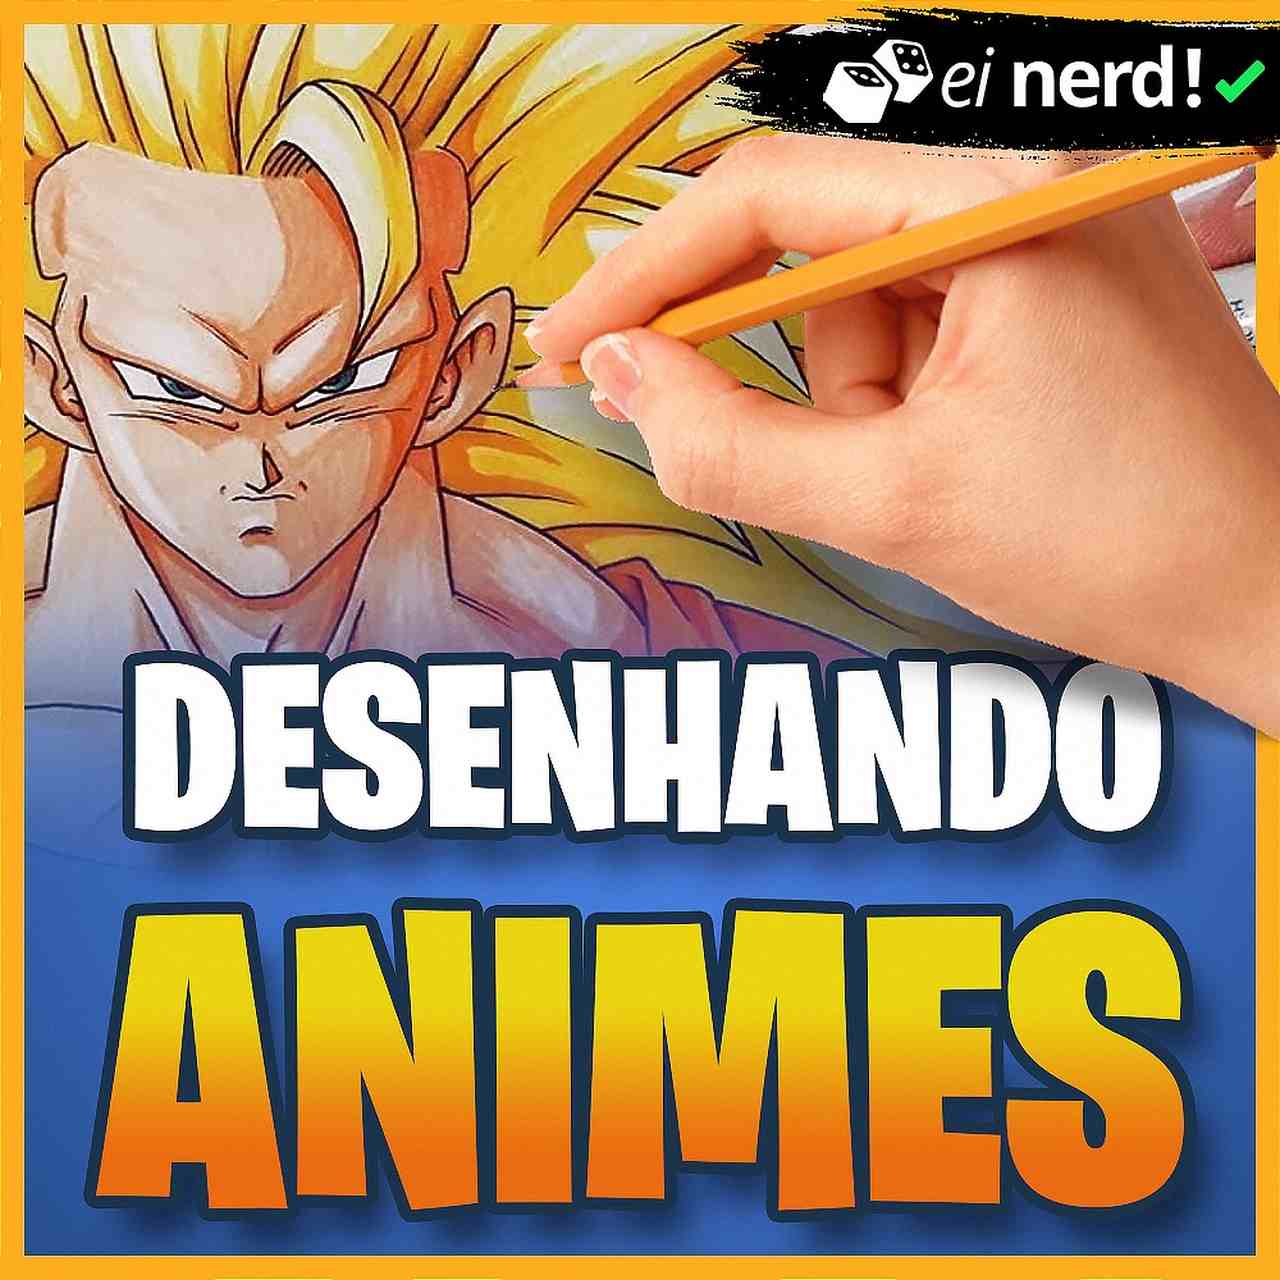 Curso Desenhando Animes Ei Nerd é bom pra todas as idades